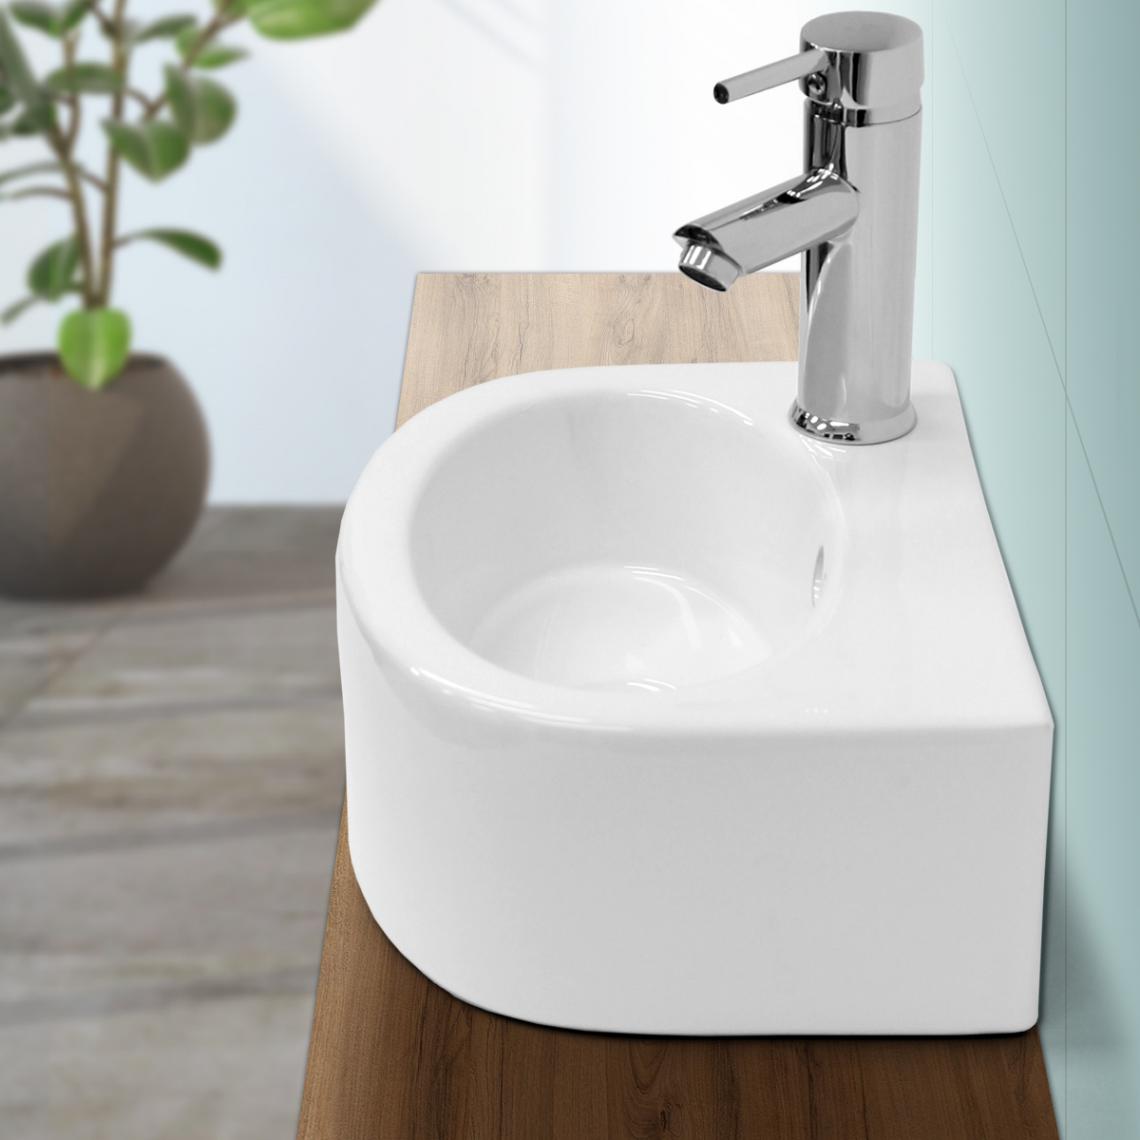 Ecd Germany - Lavabo vasque à poser en céramique évier salle de bain blanc 335 x 255 x 130 mm - Vasque